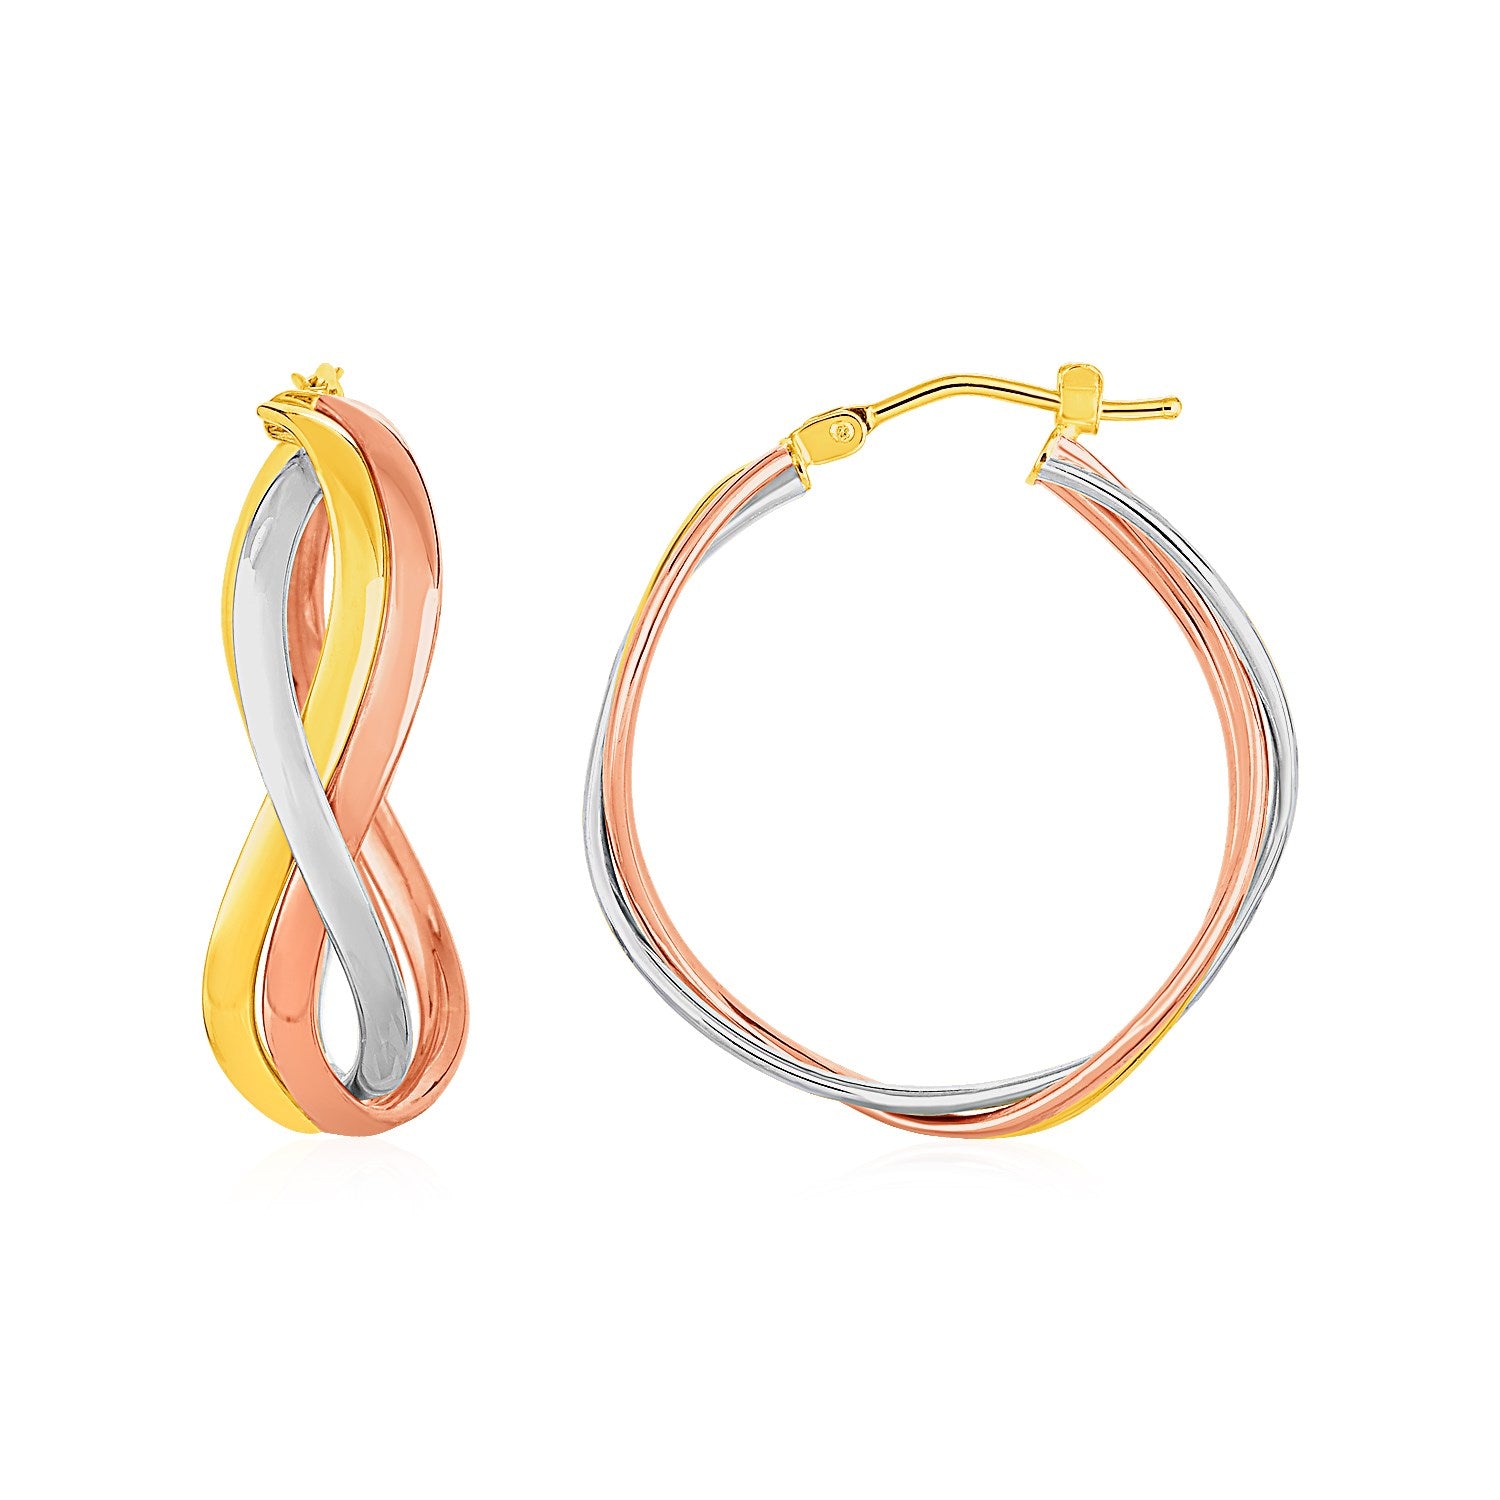 Three Part Wavy Hoop Earrings in 14k Tri Color Gold